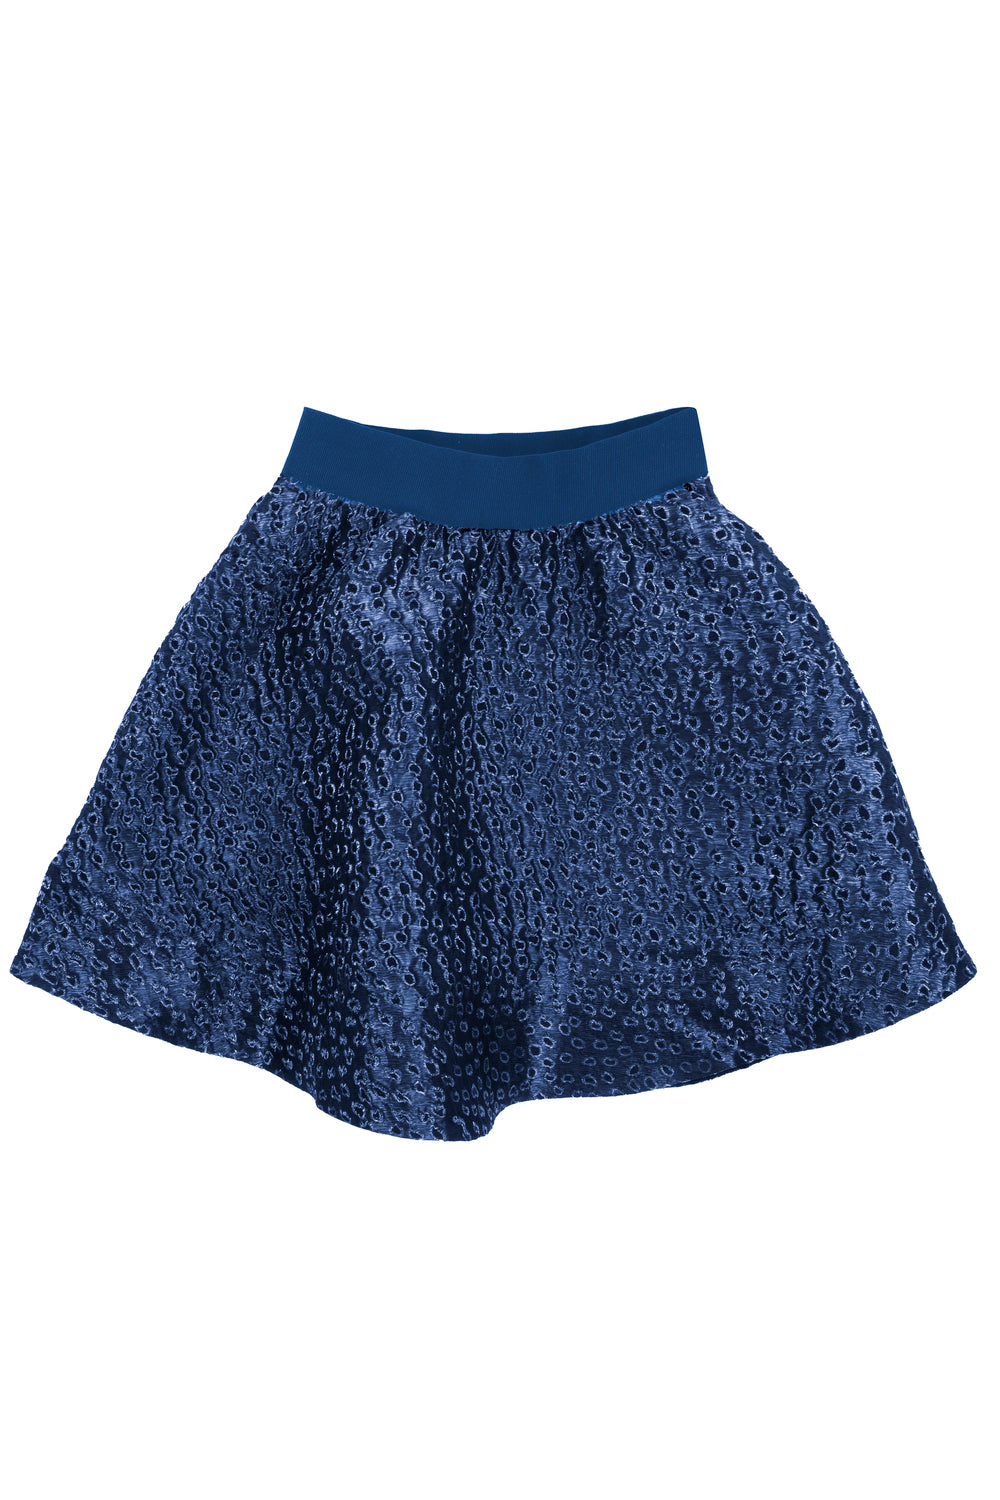 Mimisol Detailed Skirt - Dark Blue